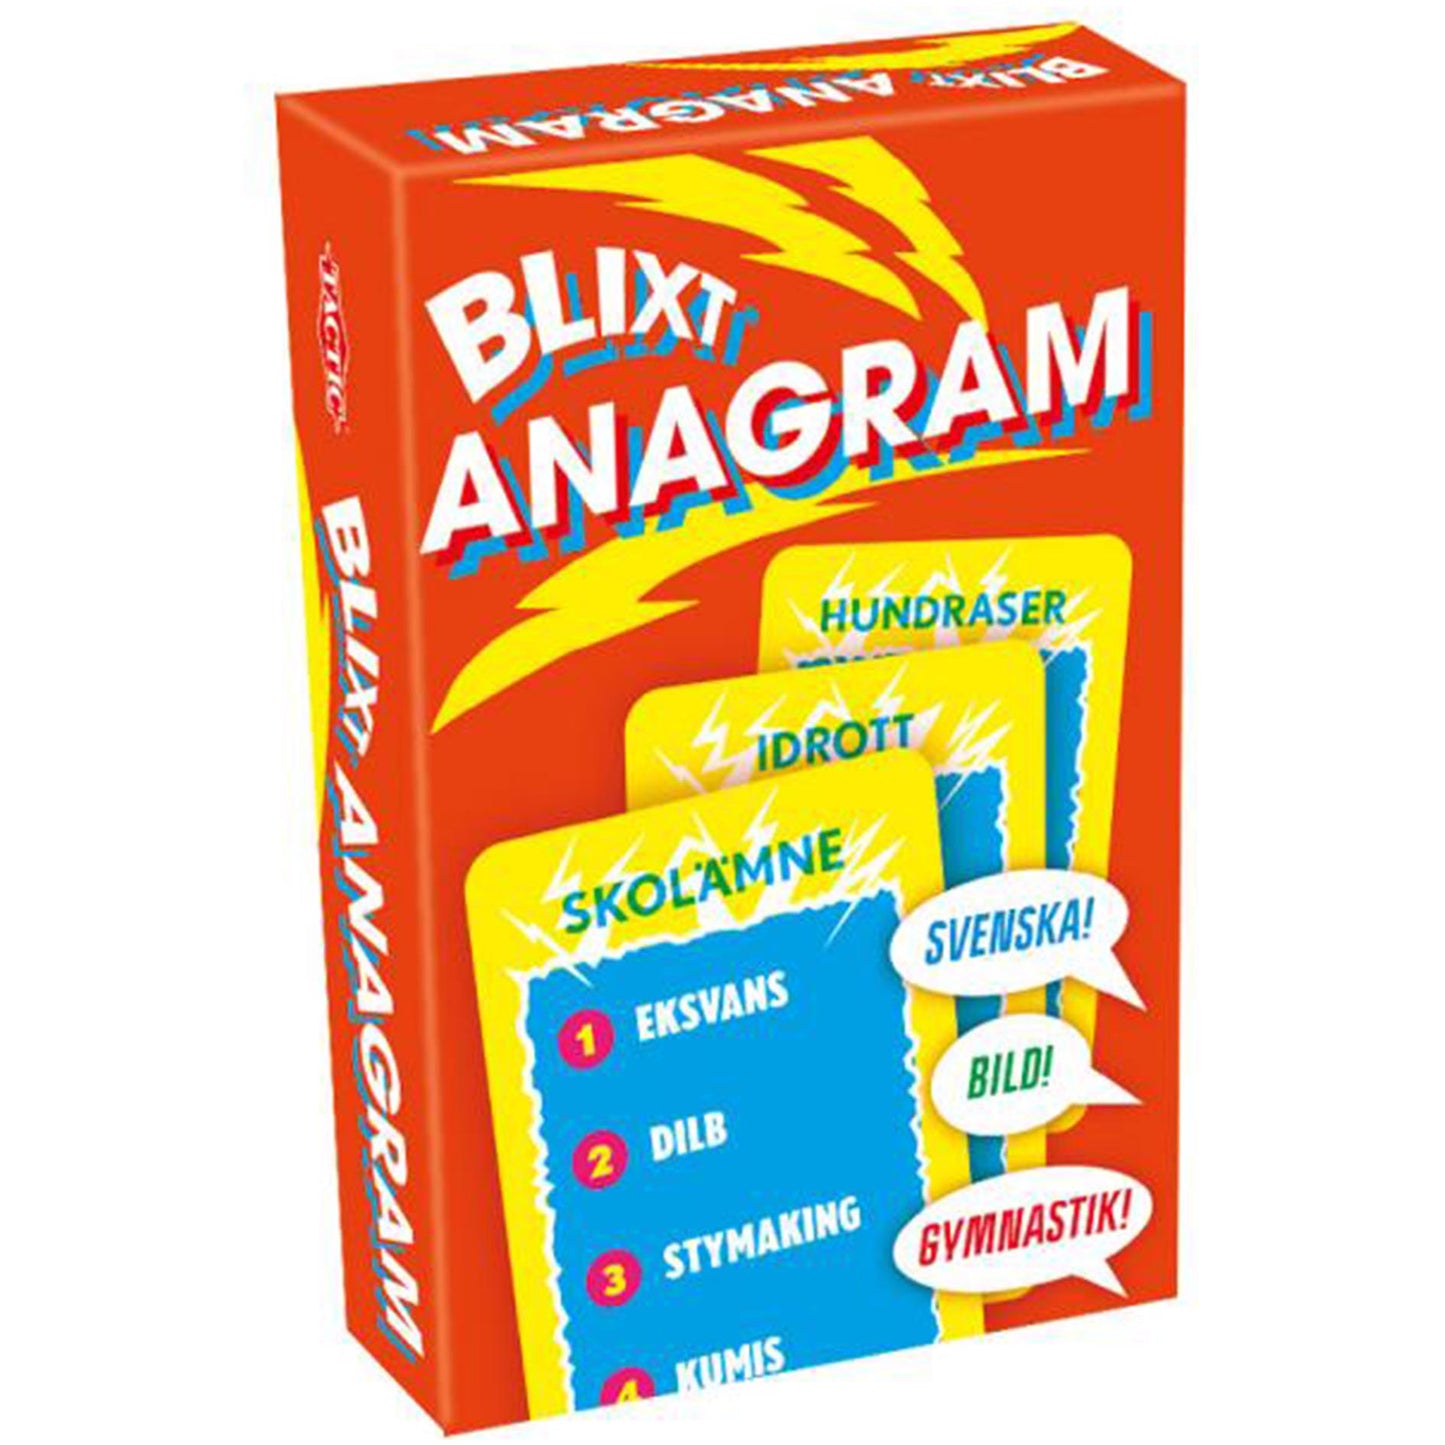 blixt anagram